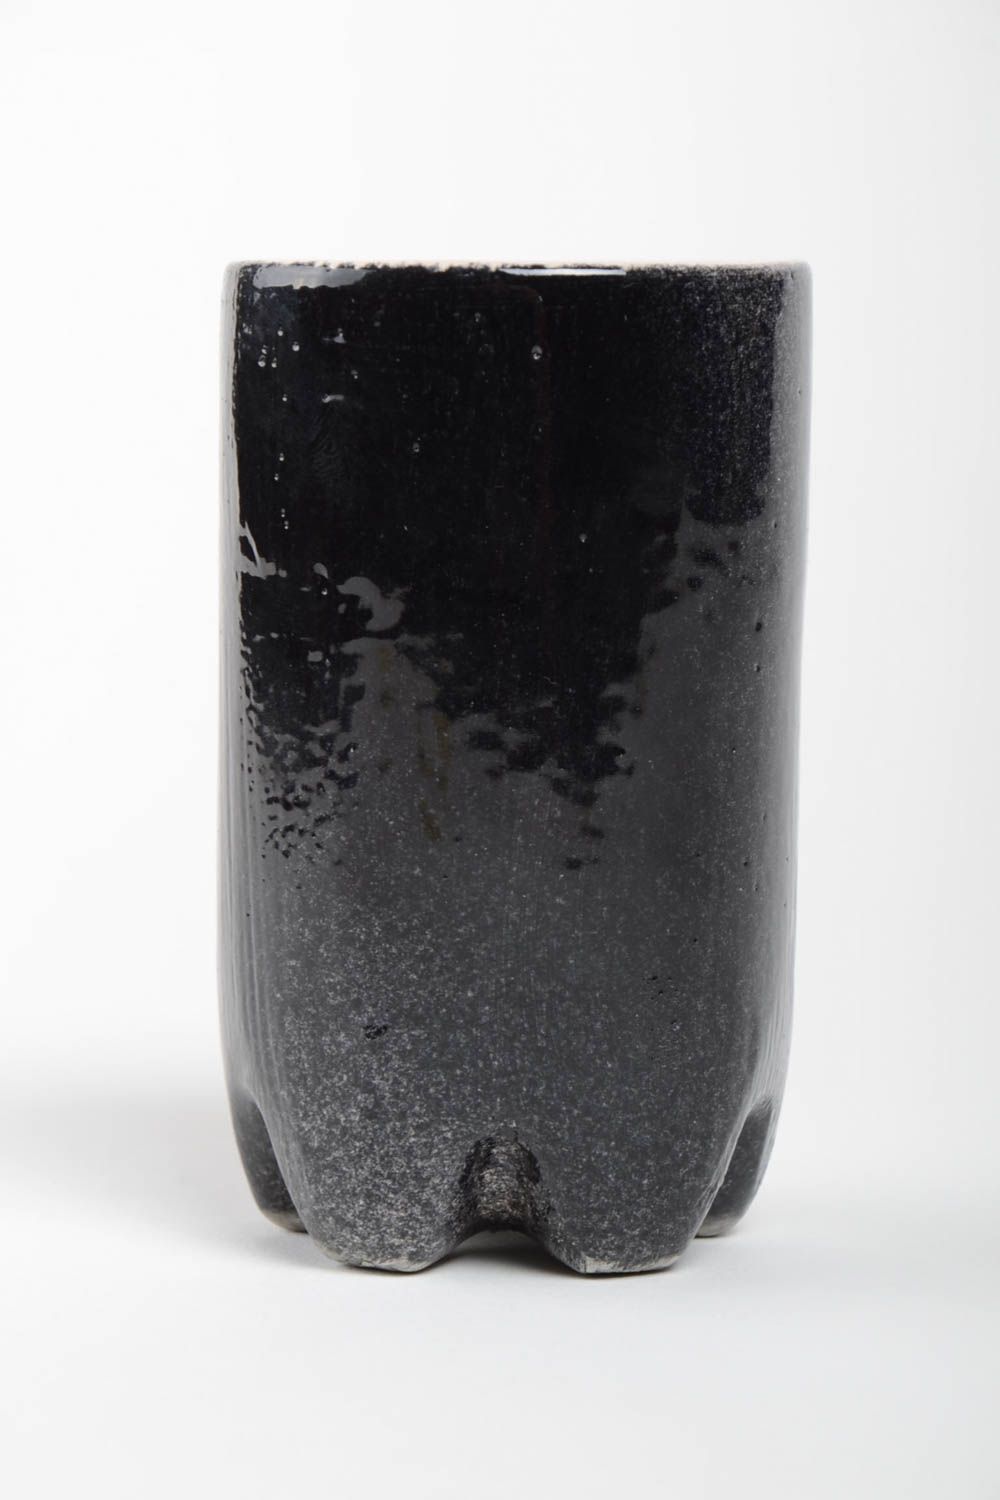 Keramik Handarbeit Trinkbecher Ton cooles Geschirr schwarzer Becher 300 ml   foto 2